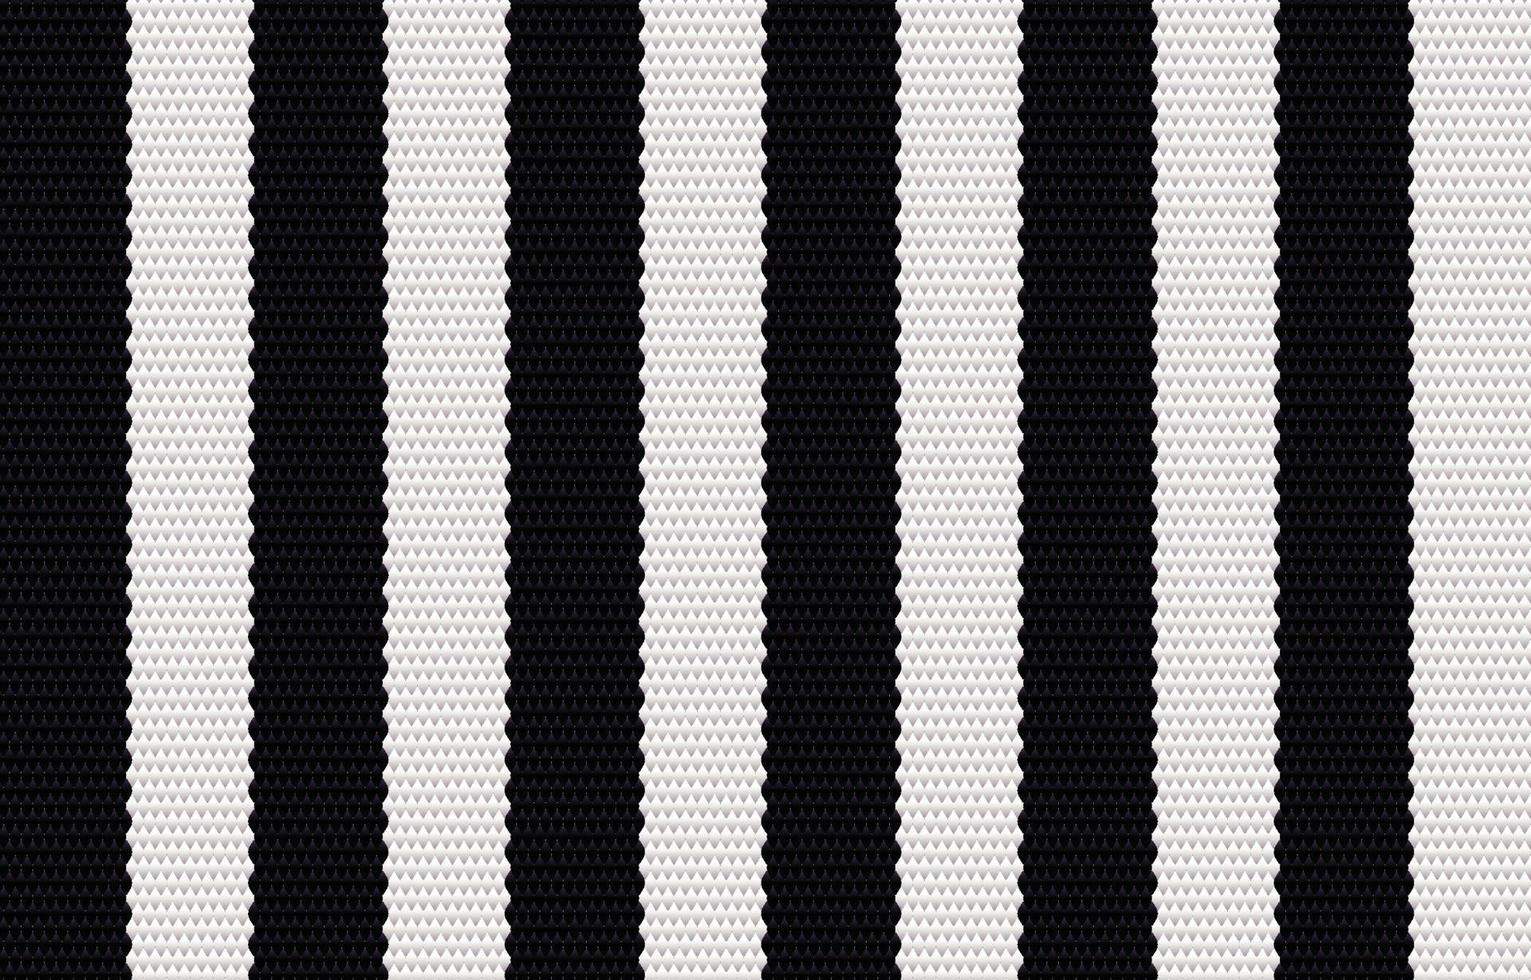 étnico padrão geométrico preto em estilo de tecido. design para tapete, papel de parede, roupas, embrulho, batik, tecido, estilo de bordado de ilustração vetorial em temas étnicos. vetor